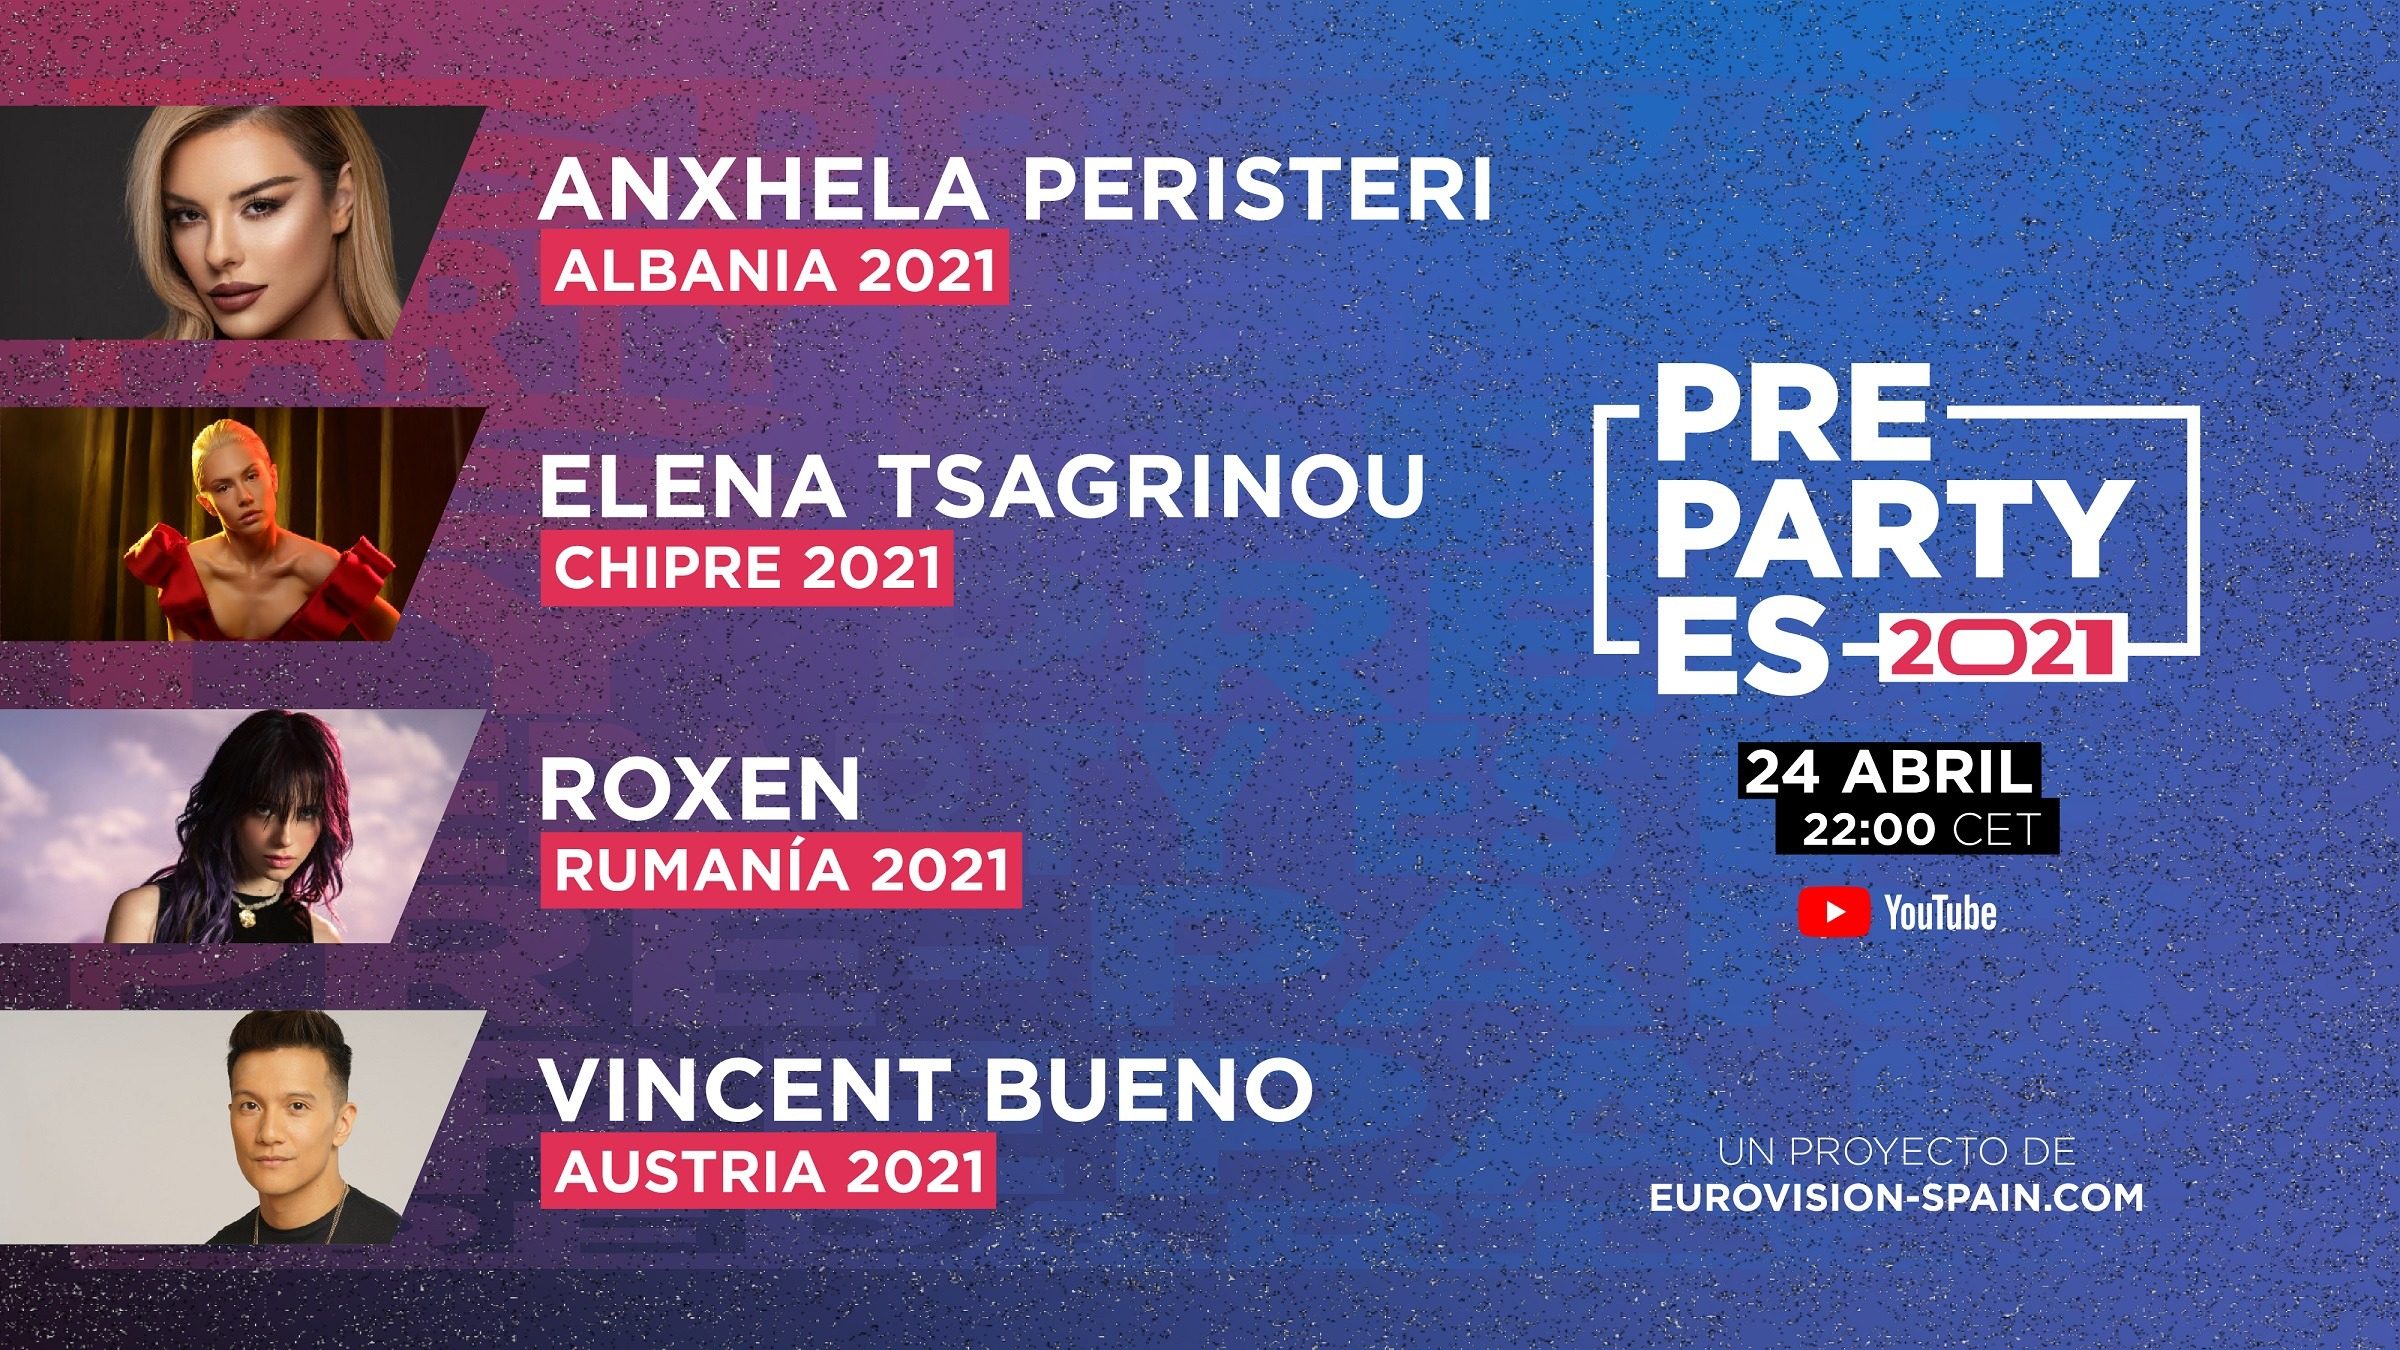 La PrePartyES ya supera la mitad de los representantes de 2021 con Anxhela Peristeri, Elena Tsagrinou, Roxen y Vicent Bueno